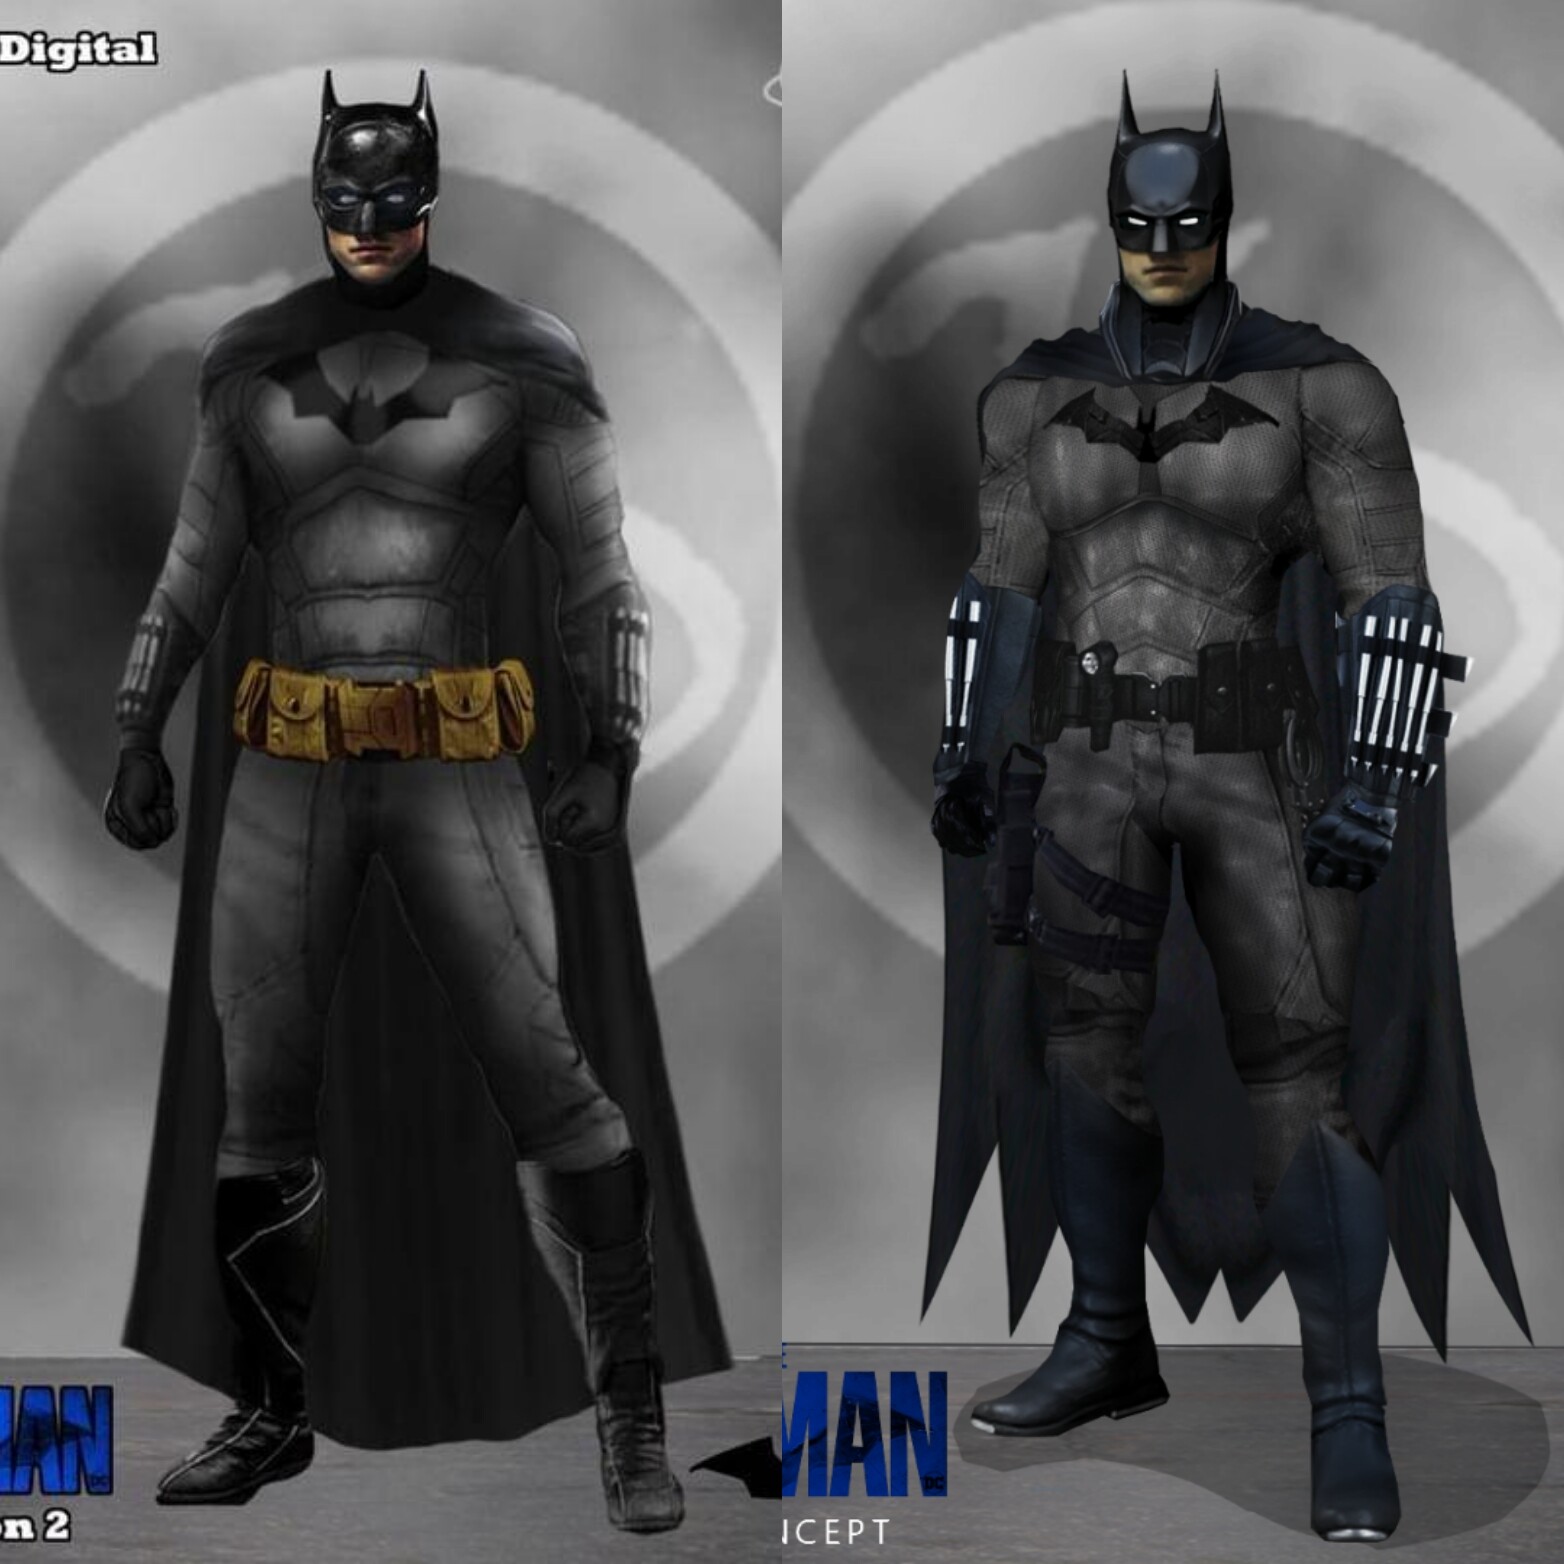 ArtStation - The Batman Suit V2 Concept Art